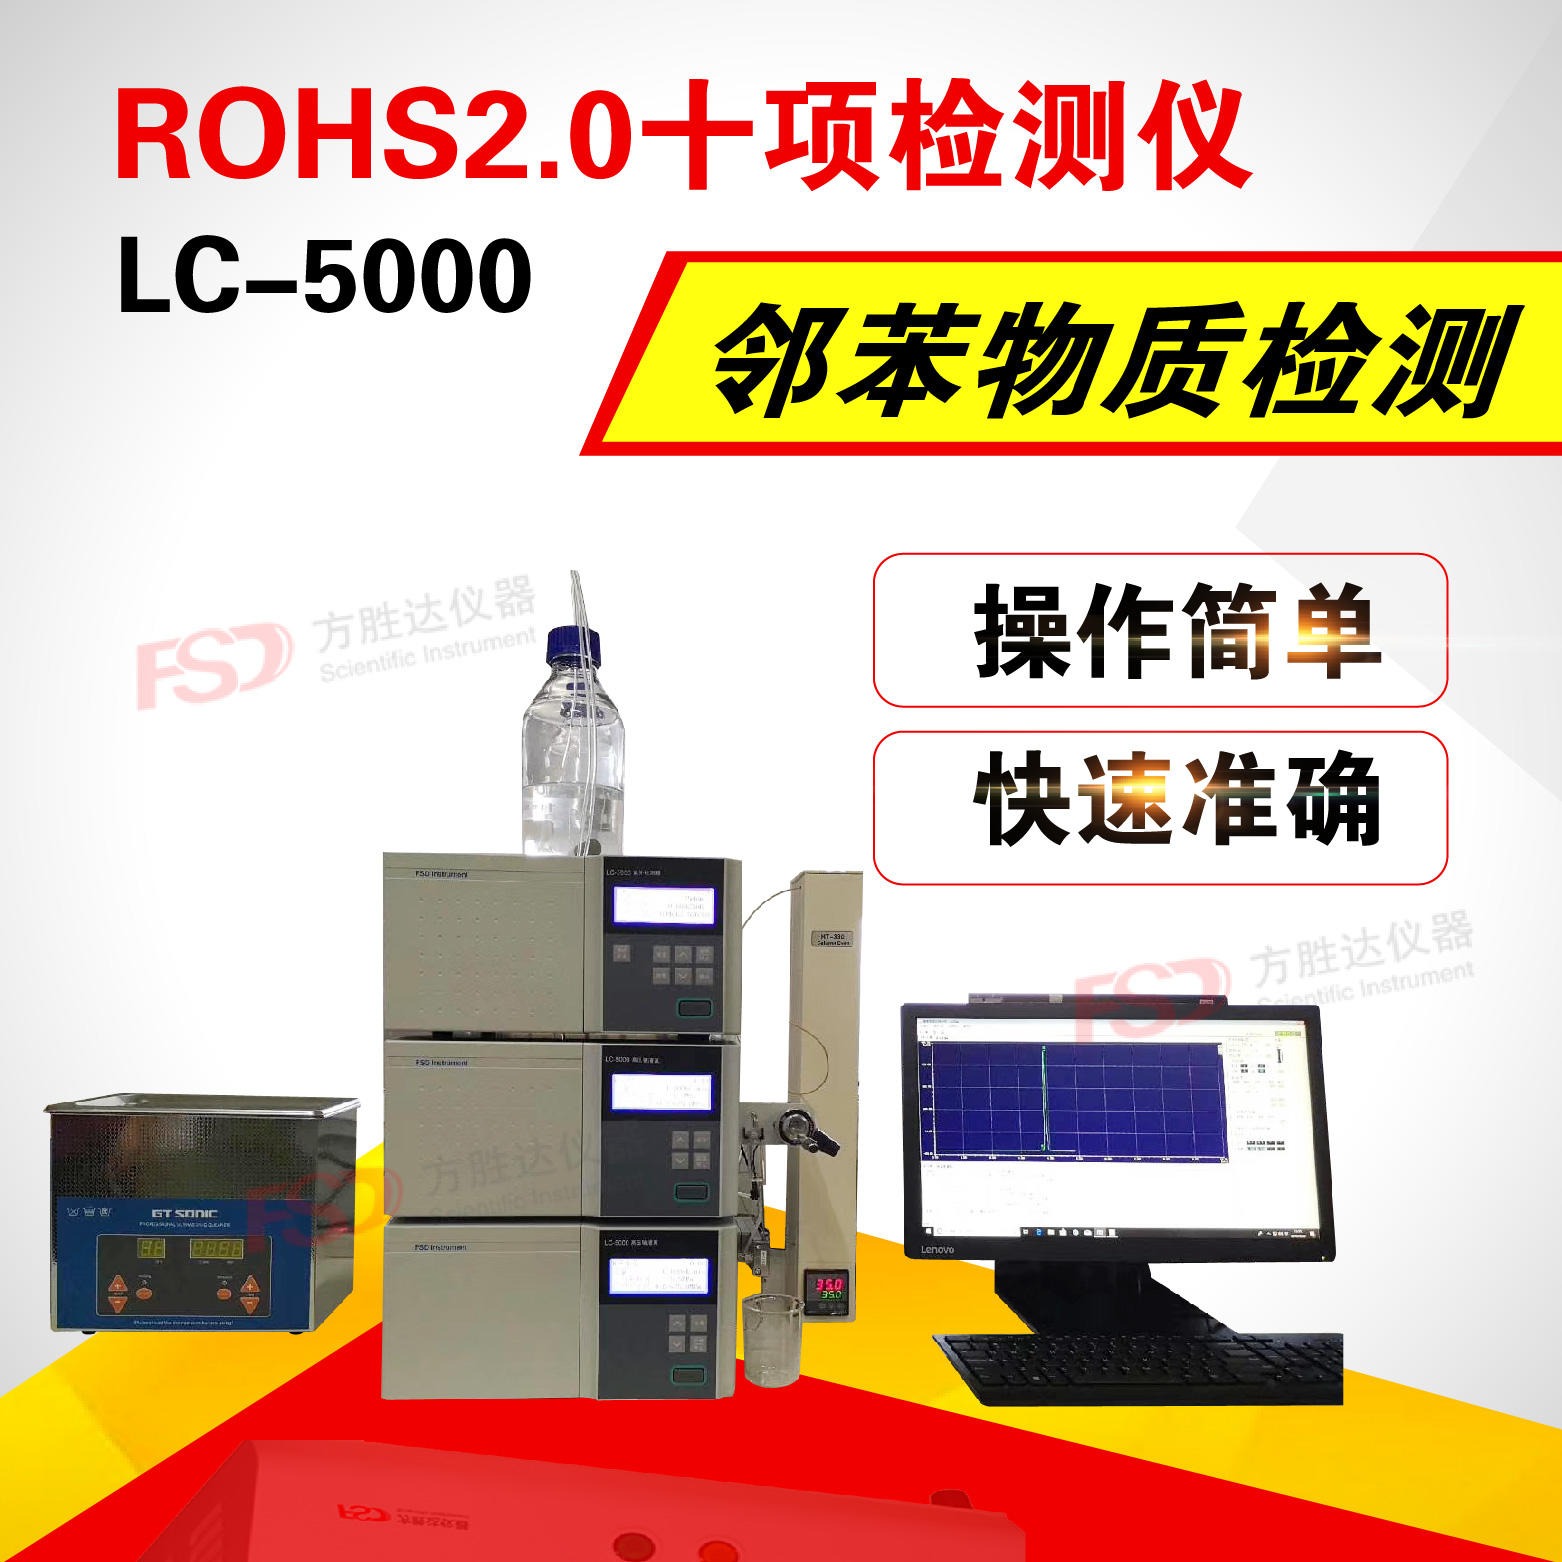 rohs测试仪器LC-5000ROHS2.0检测仪图片